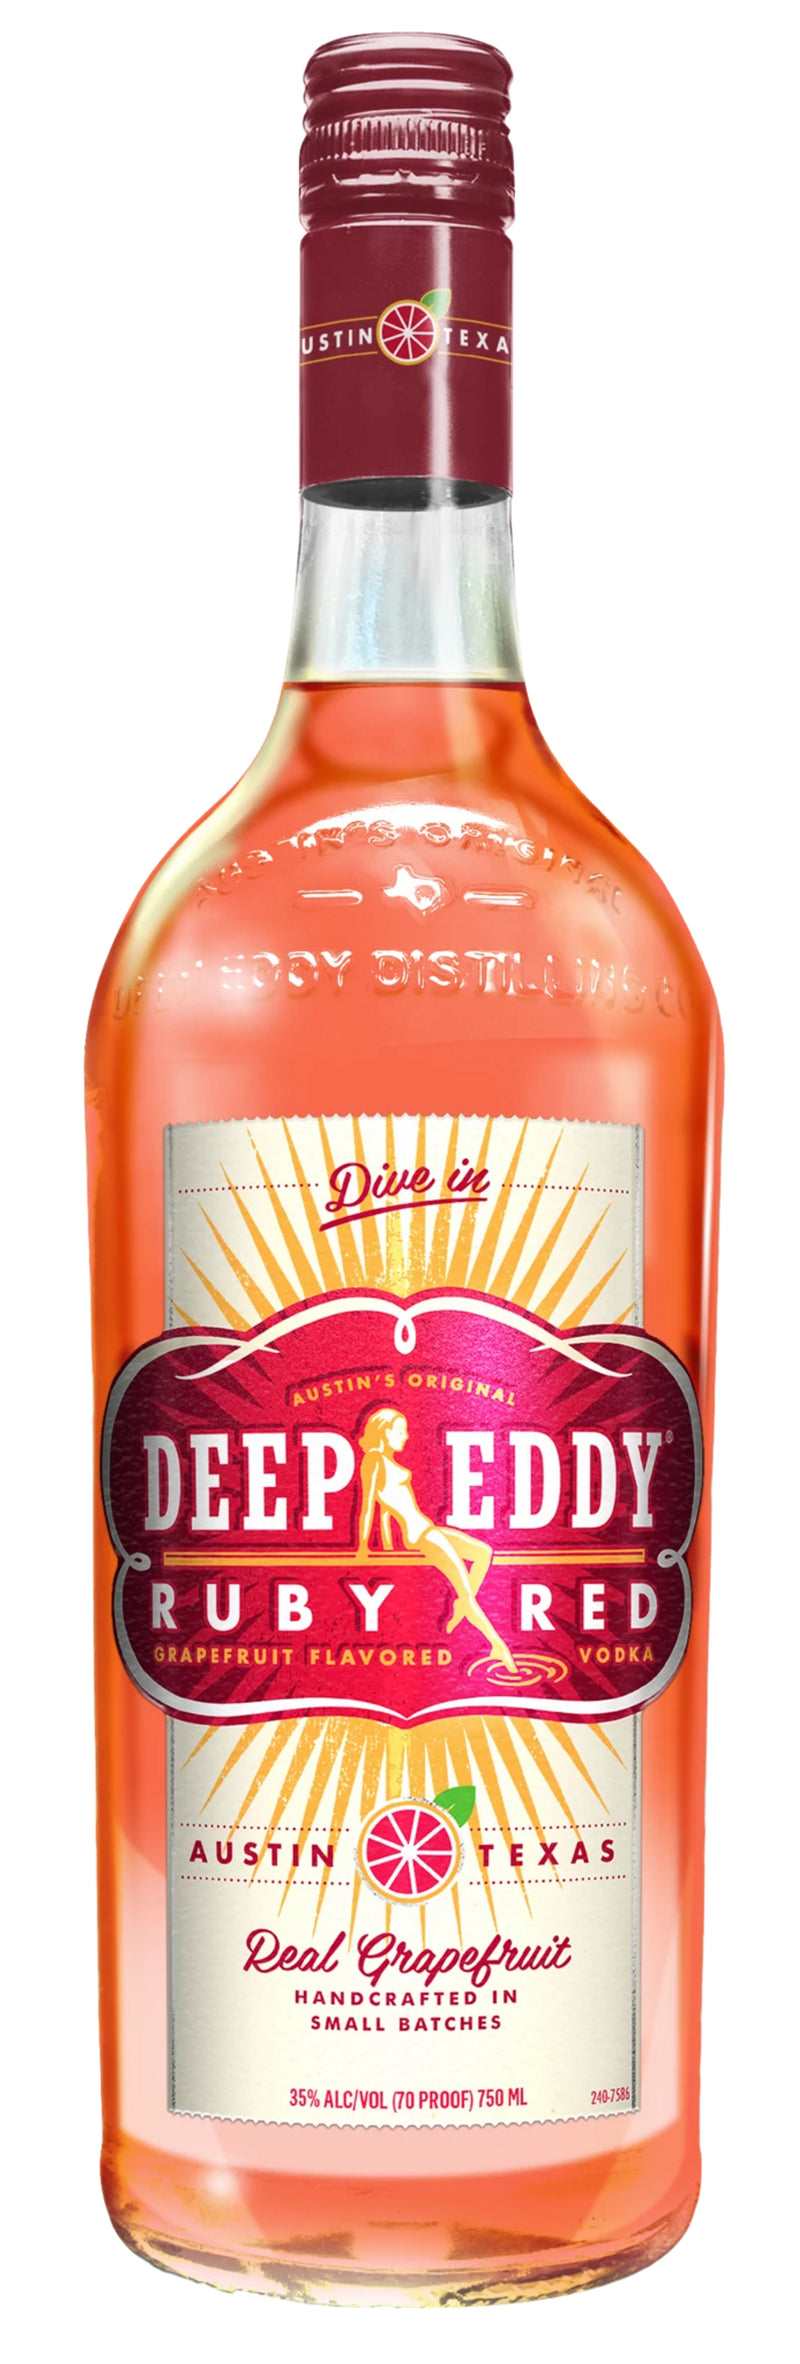 DEEP EDDY RUBY RED